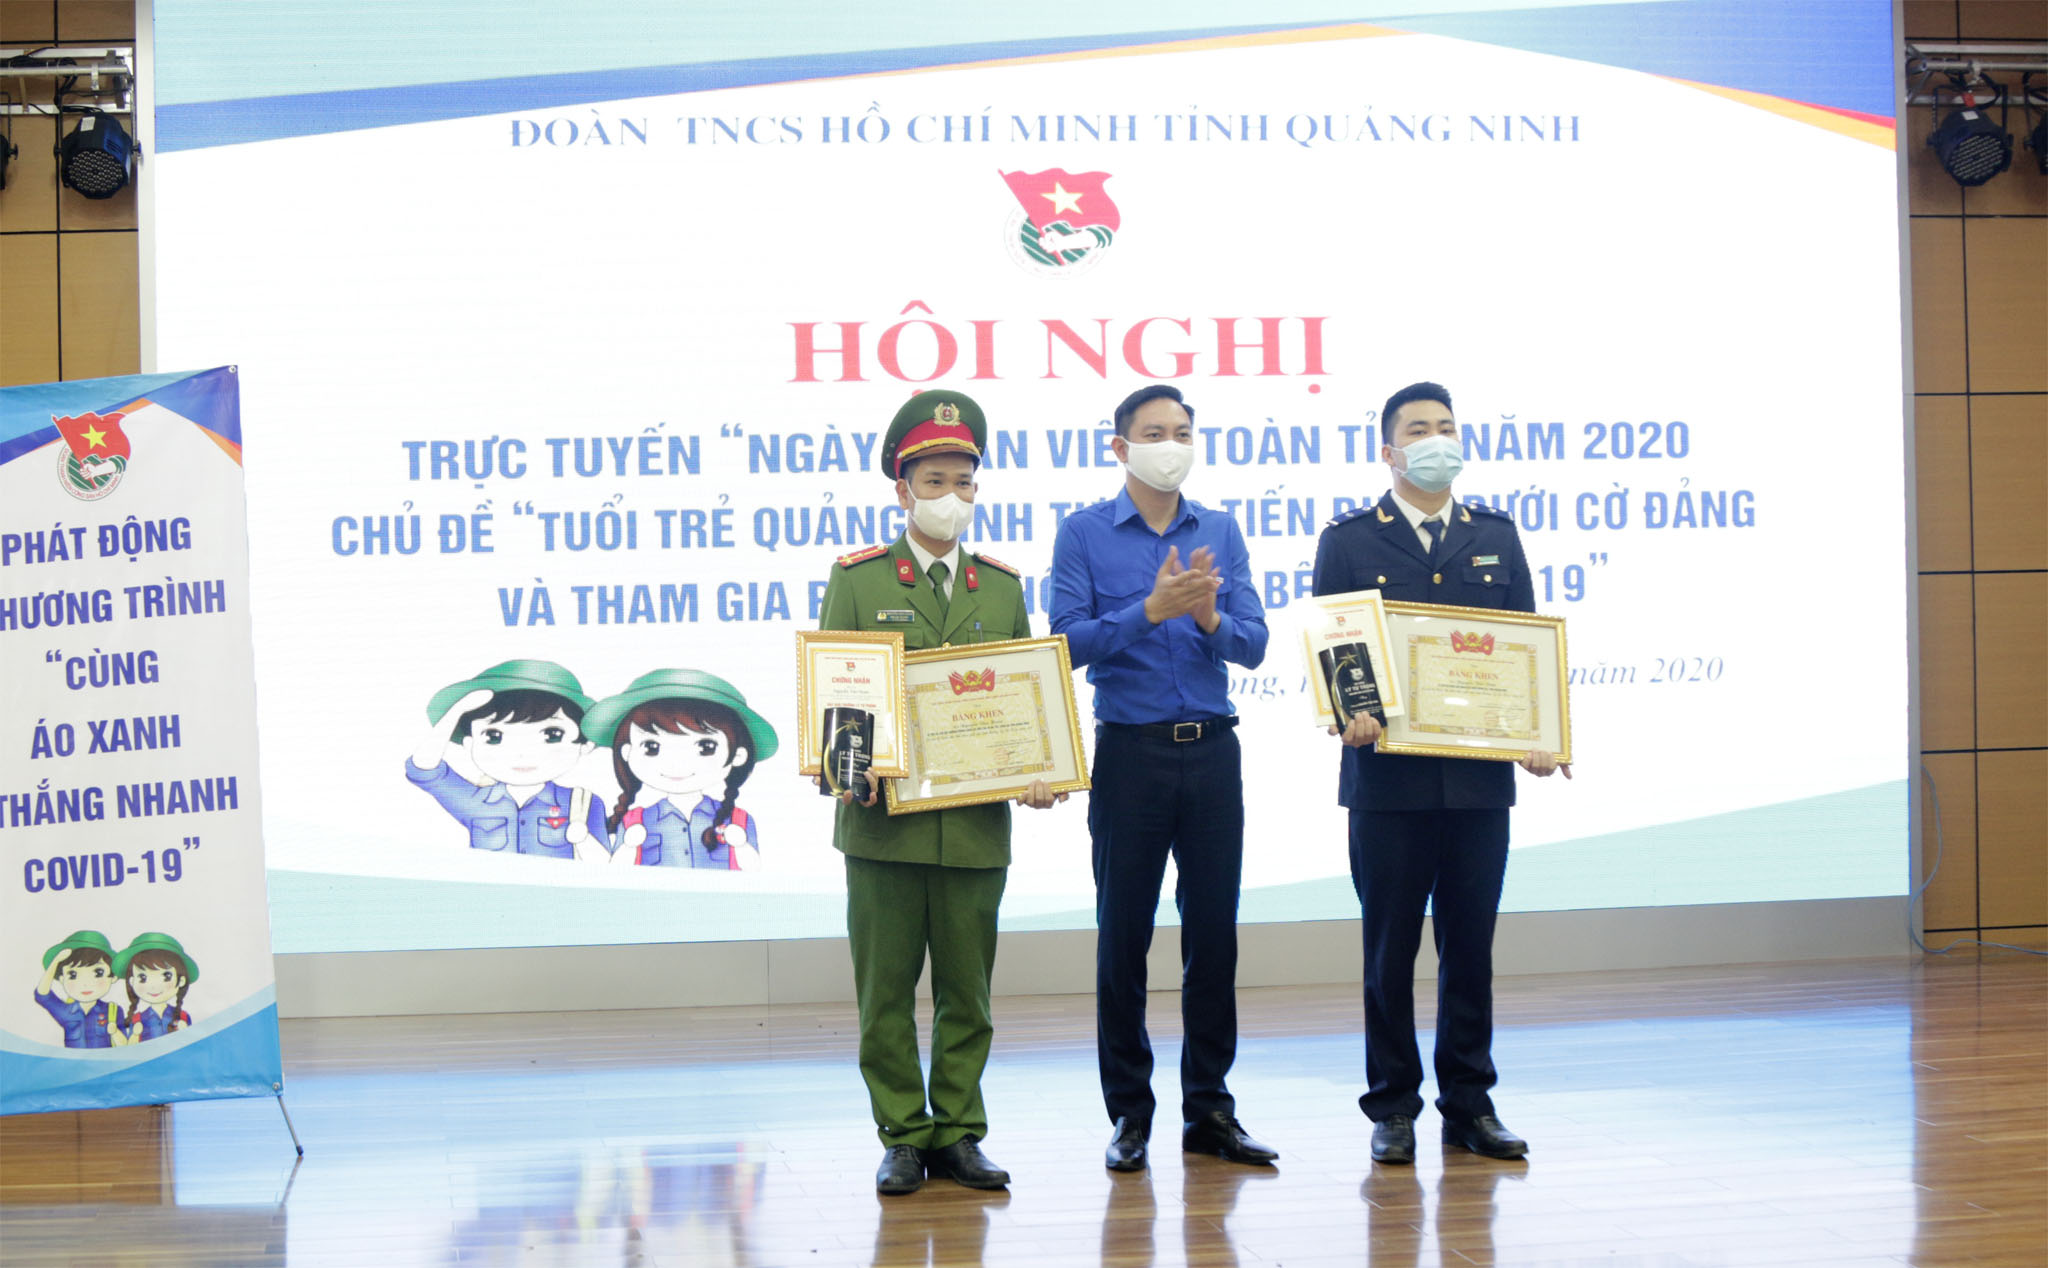 Đồng chí Lê Hùng Sơn, Bí thư Tỉnh Đoàn trao giải thưởng Lý Tự Trọng năm 2020 cho cán bộ Đoàn có thành tích xuất sắc.